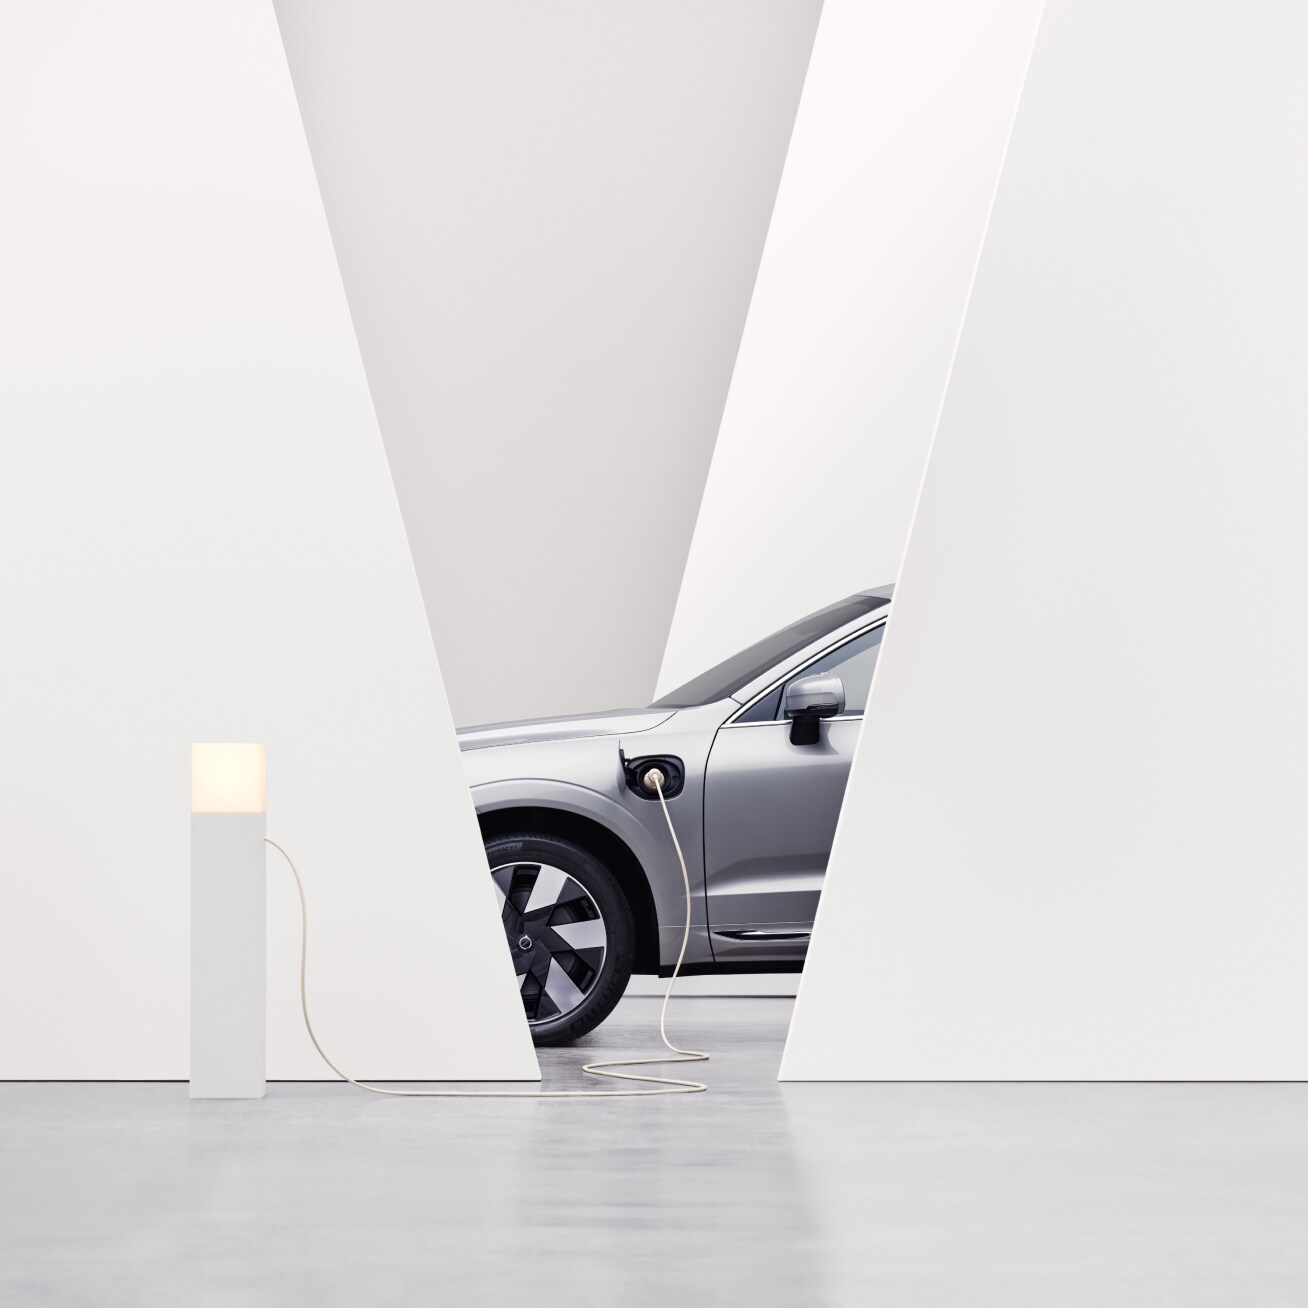 Vista lateral parcial do Volvo num ambiente interior em branco num posto de carregamento